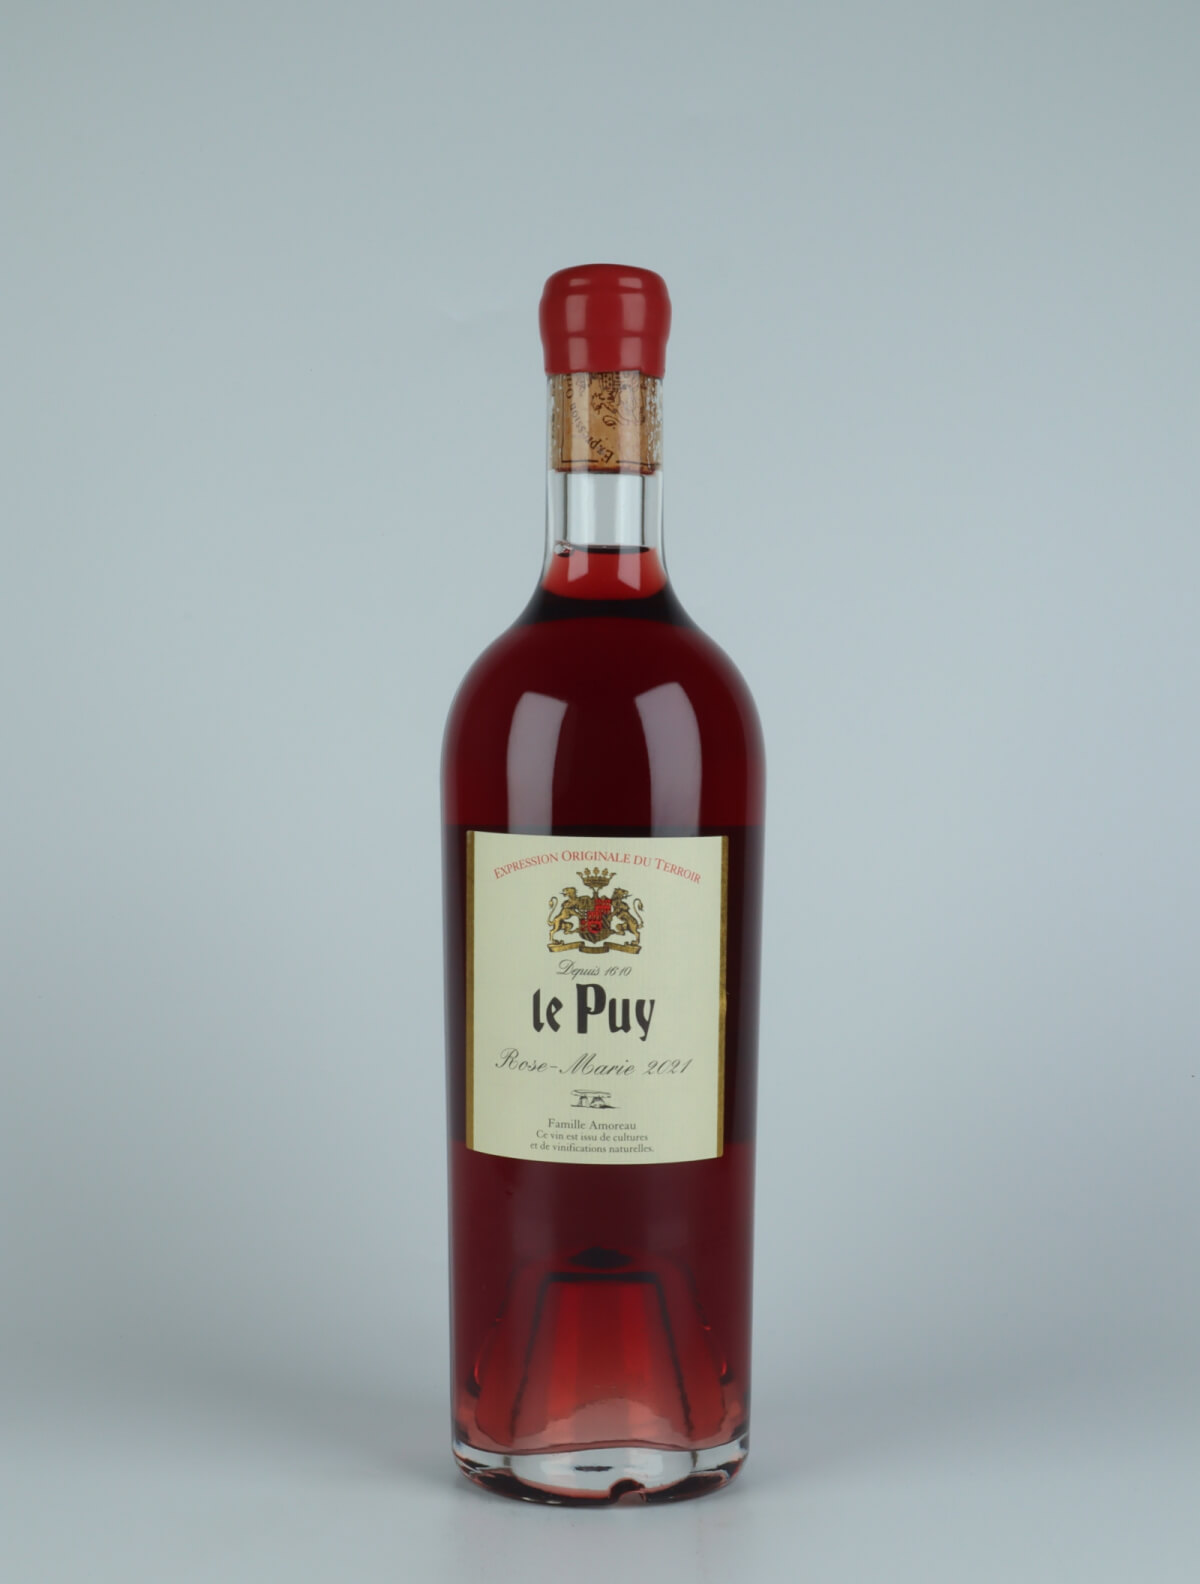 A bottle 2021 Rose-Marie Rosé from Château le Puy, Bordeaux in France